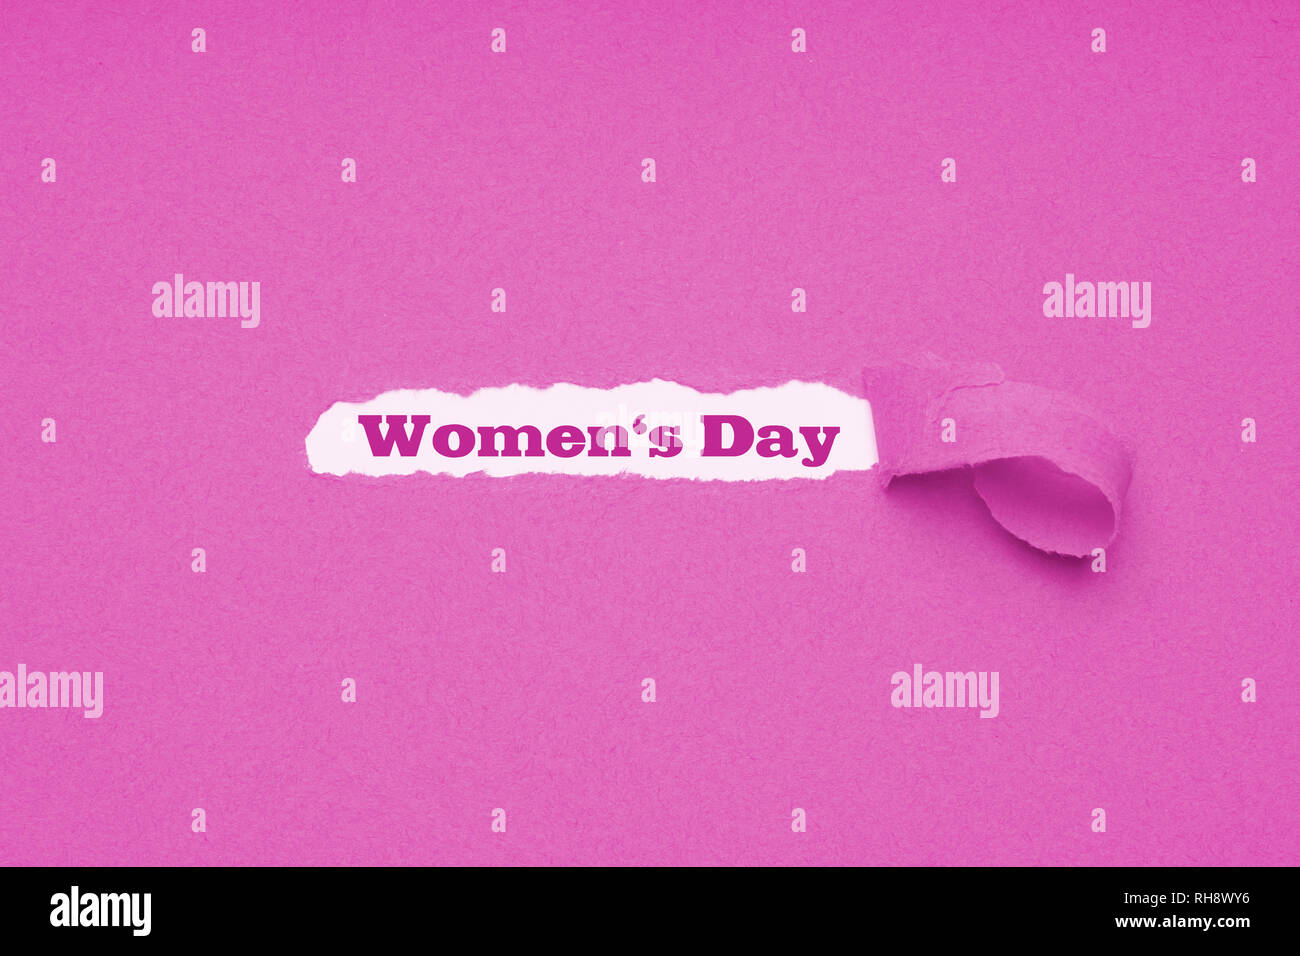 La journée internationale des femmes est célébrée le 8 mars Banque D'Images